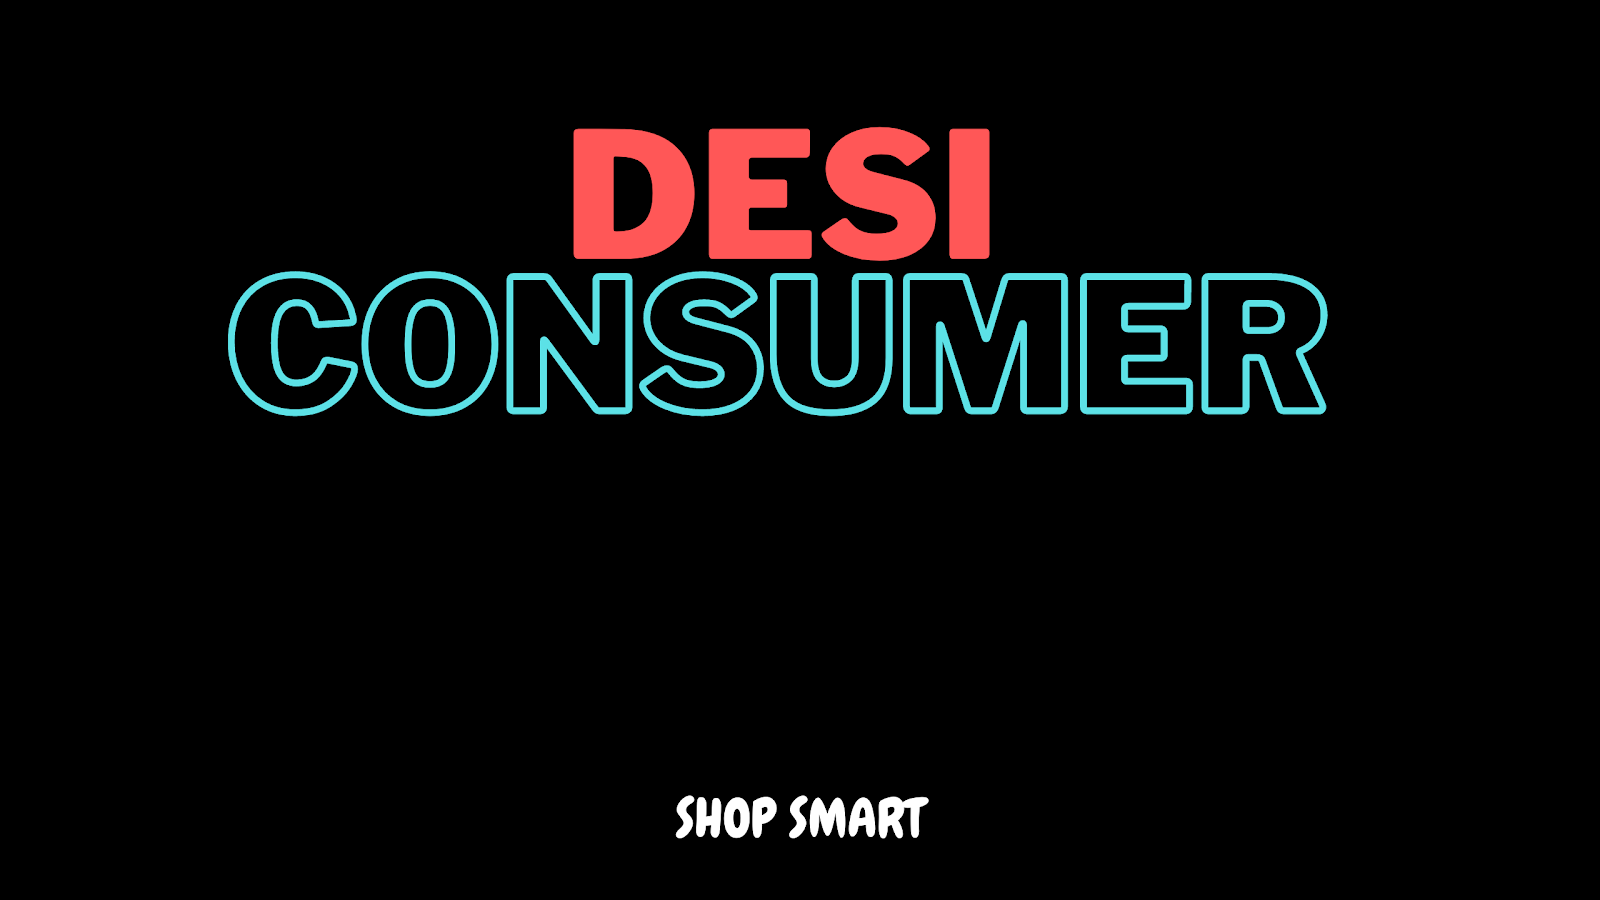 Desi digital consumer